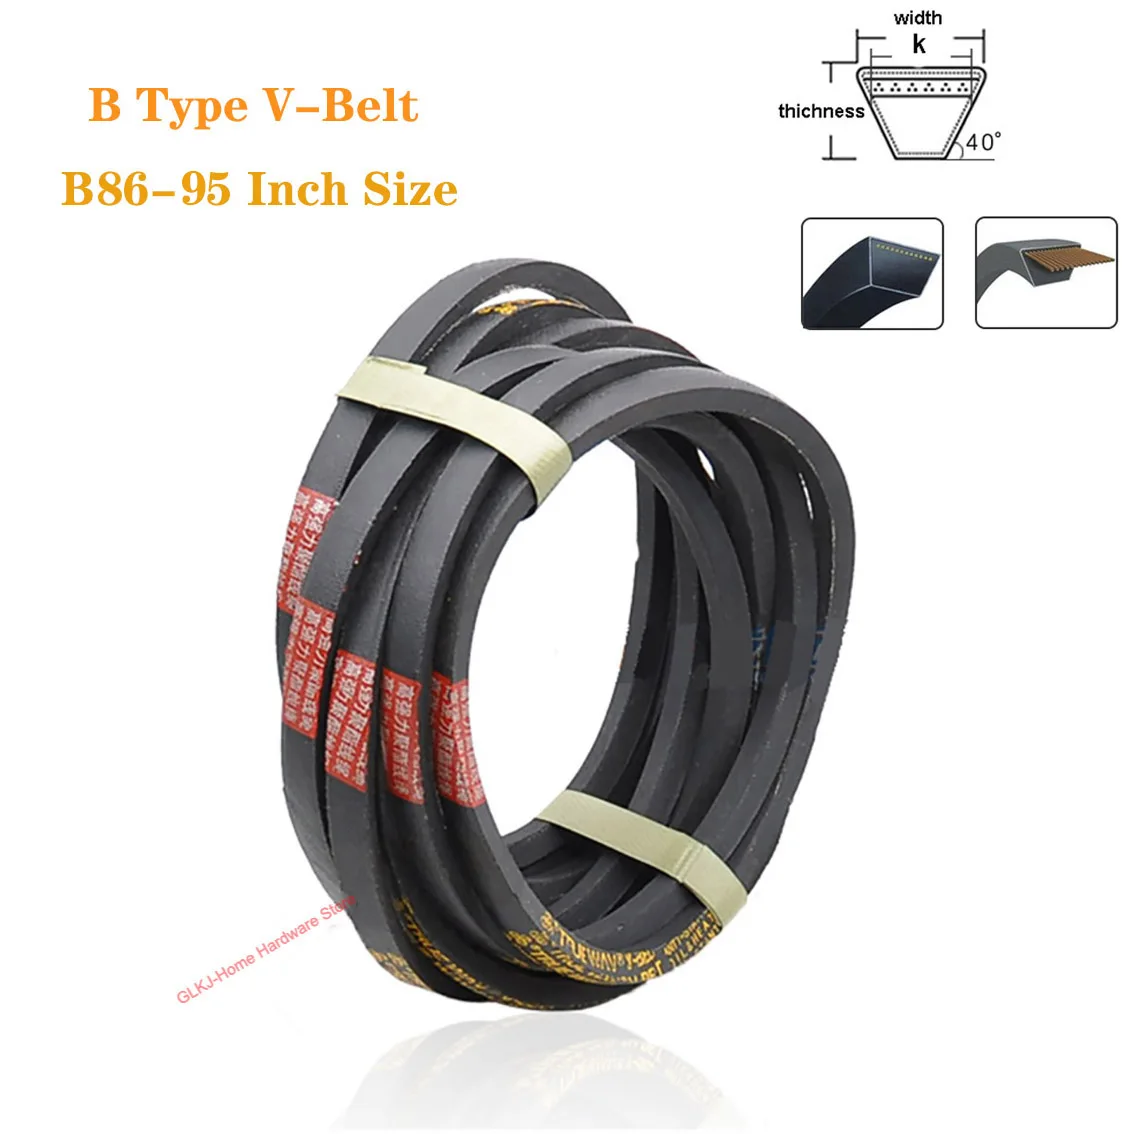 

1Pcs B86/87/88-95 Inch Size B Type V-Belt Black Rubber Triangle Belt Industrial Agricultural Mechanical Transmission Belt